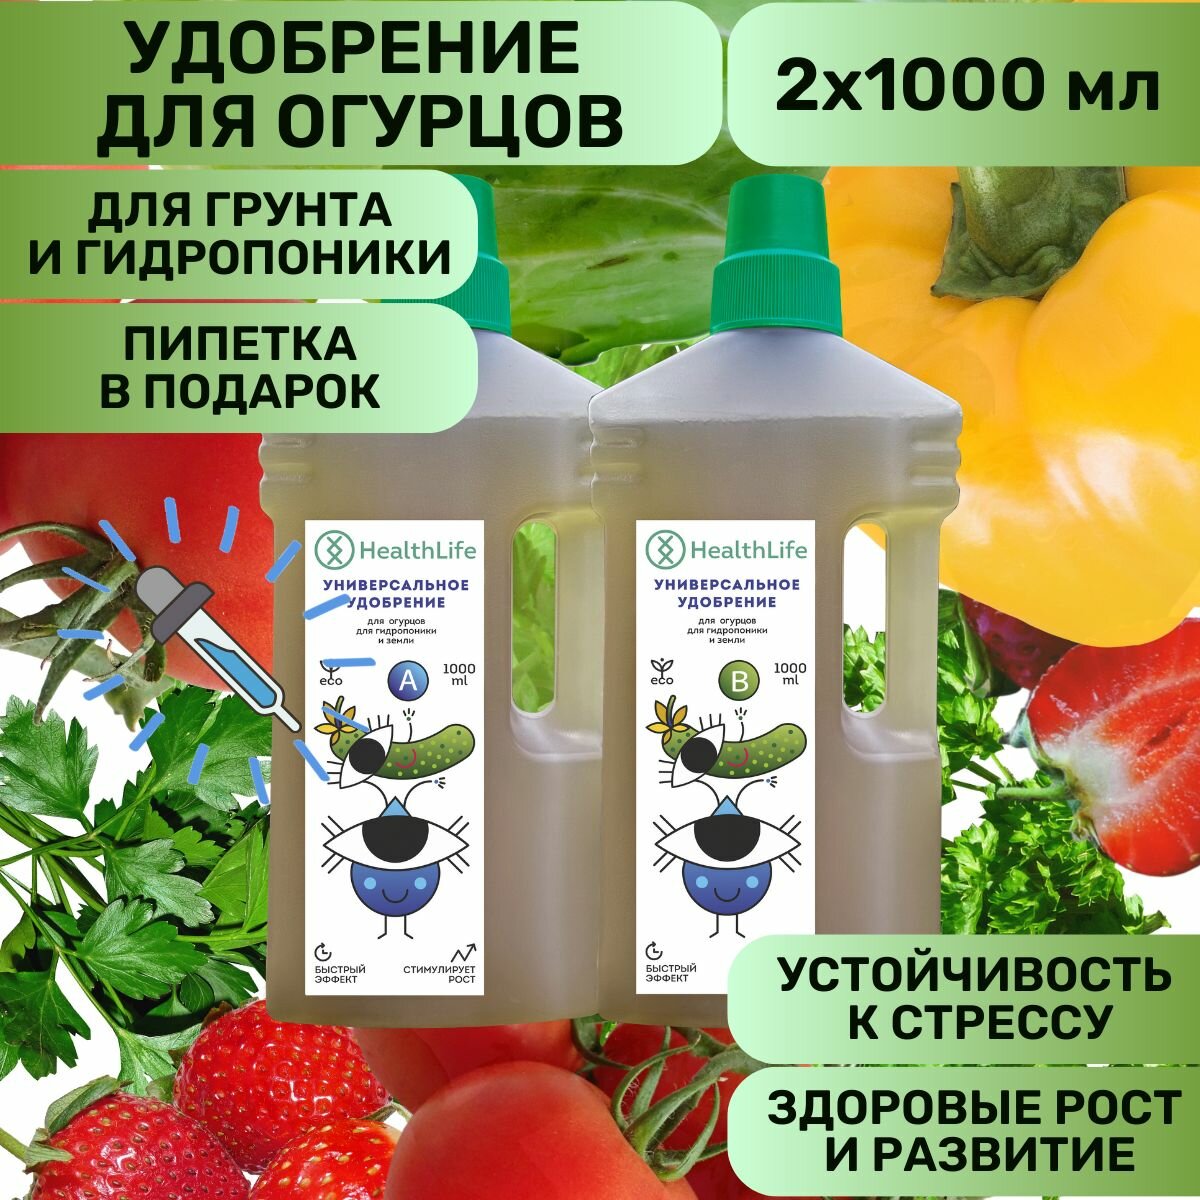 Комплекс HealthLife Удобрение А+В для огурцов (2 бутылки по 1000 мл) концентрат для гидропоники и грунта увеличивает урожайность